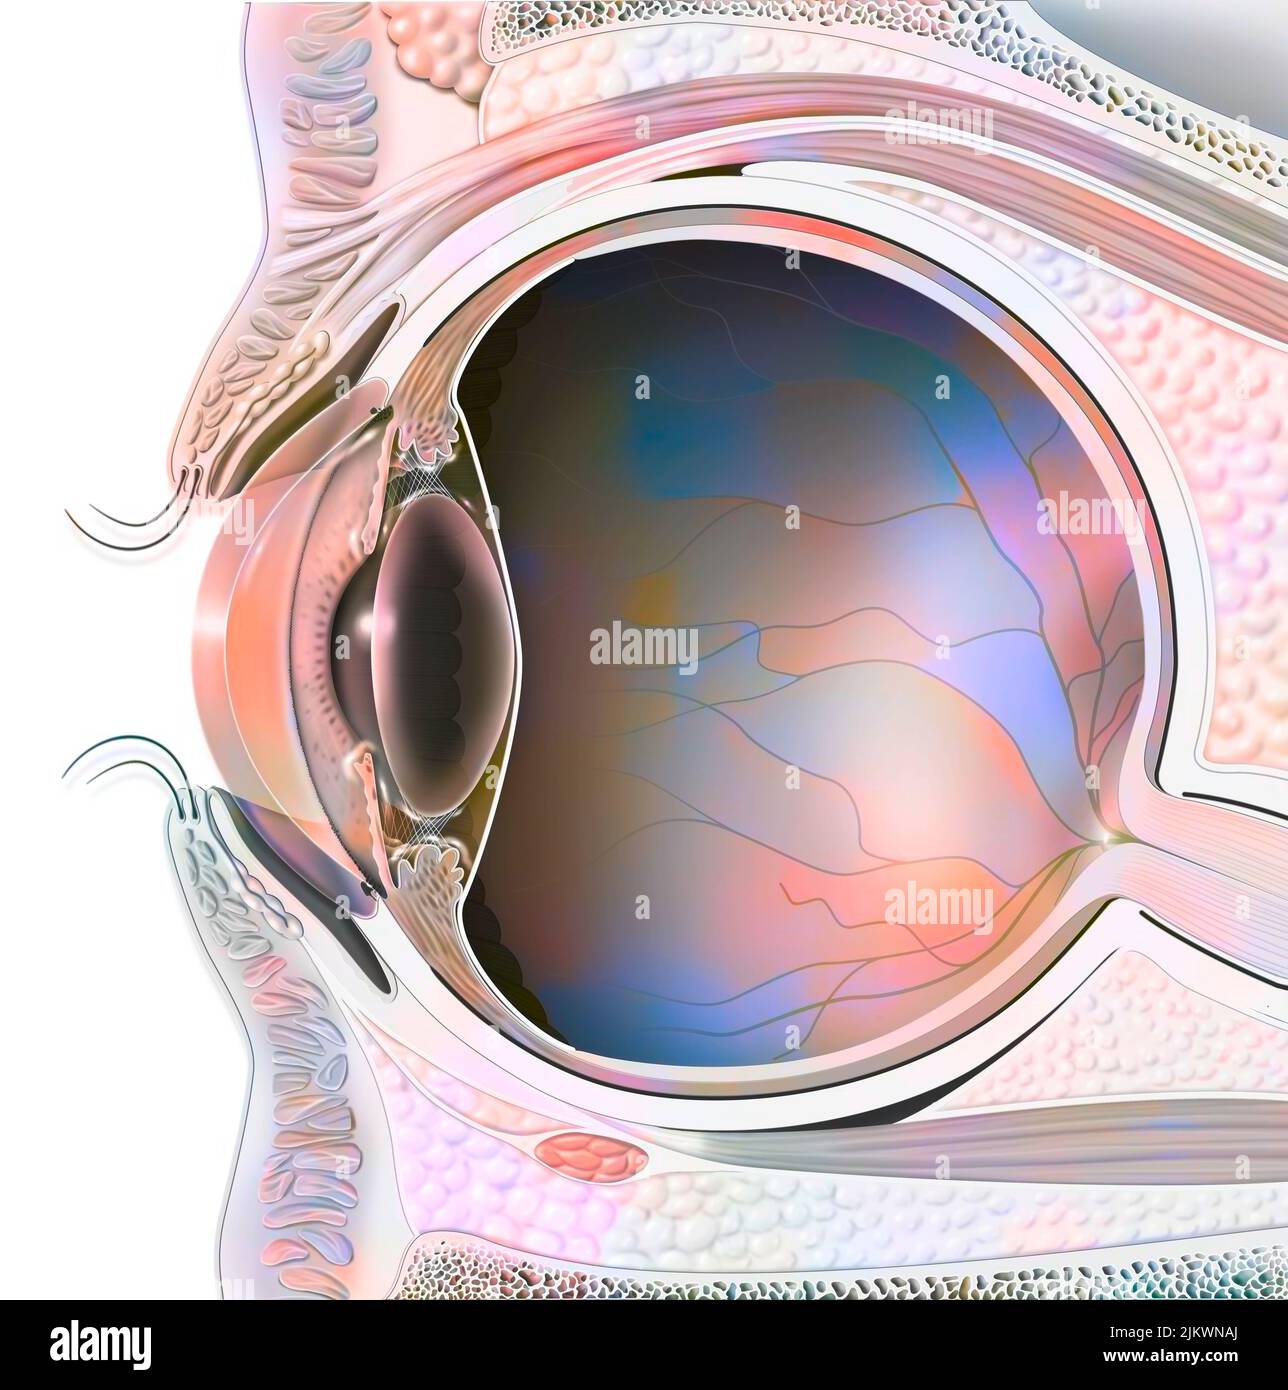 Anatomie eines Auges im Abschnitt mit Linse, Netzhaut. Stockfoto